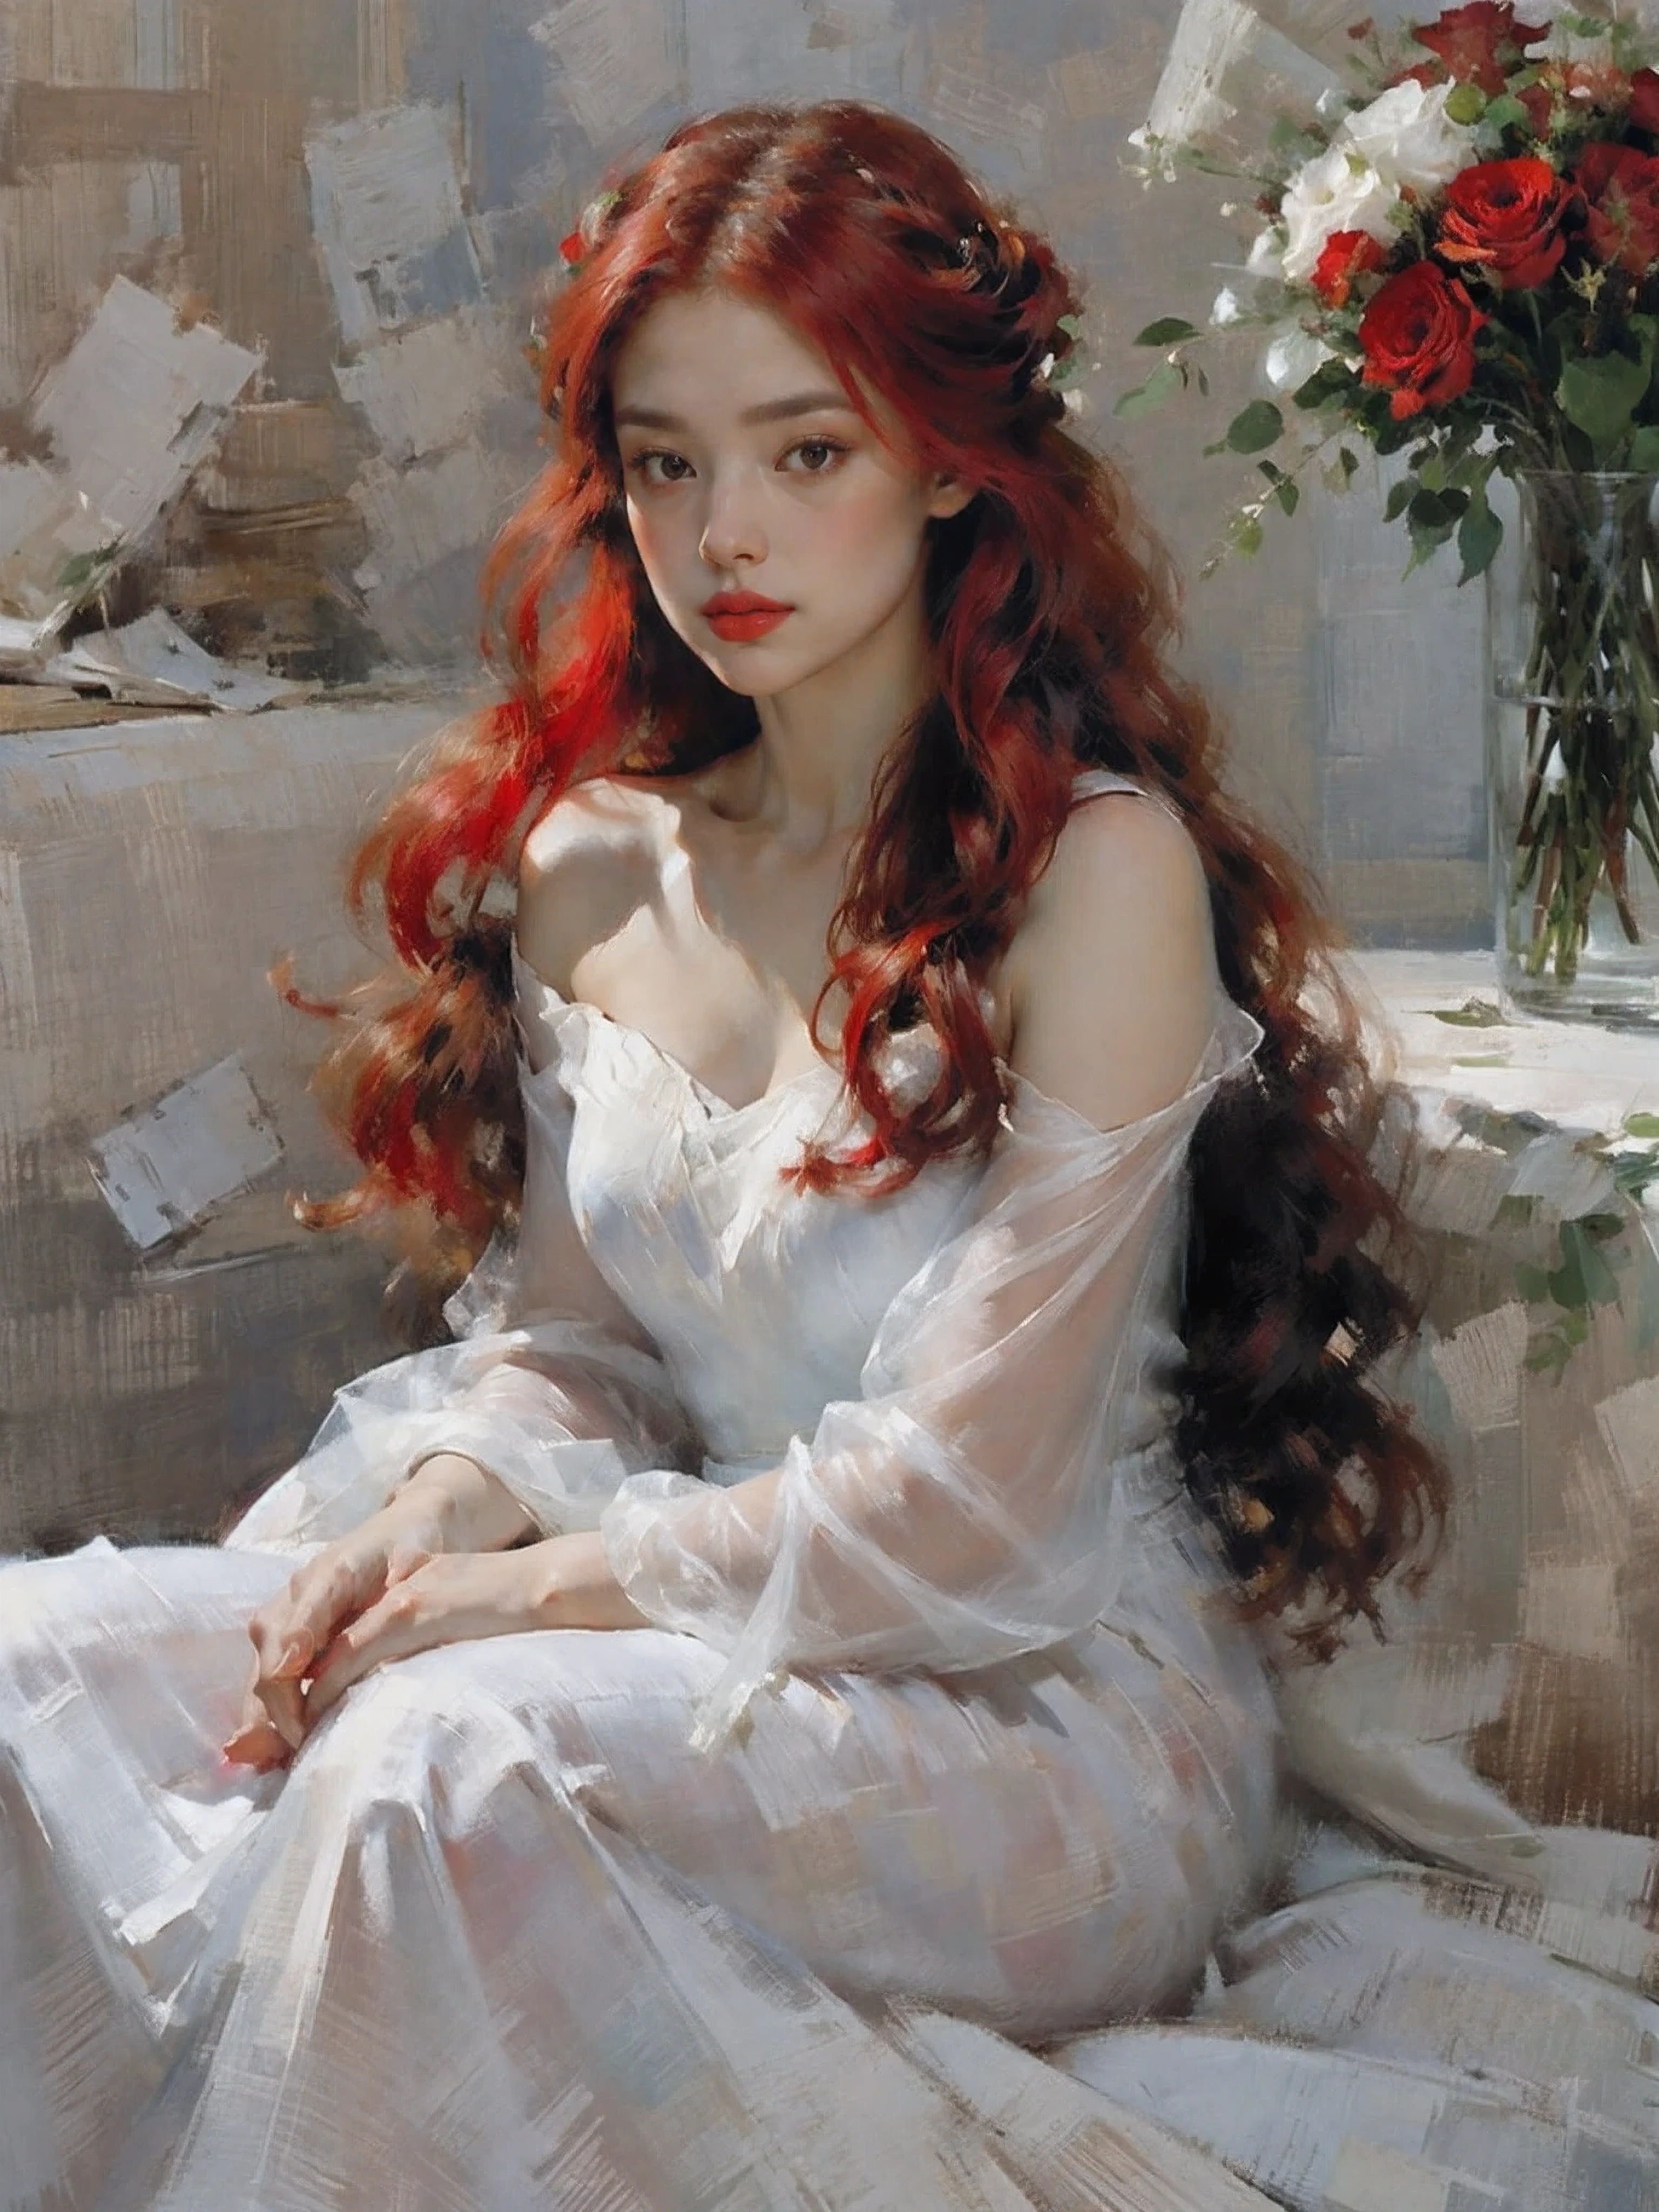 Портрет,1 девочка,один,юбка,держит букет цветов,Очень длинные волосы,Сафлор,красные волосы,Красная роза,white юбка